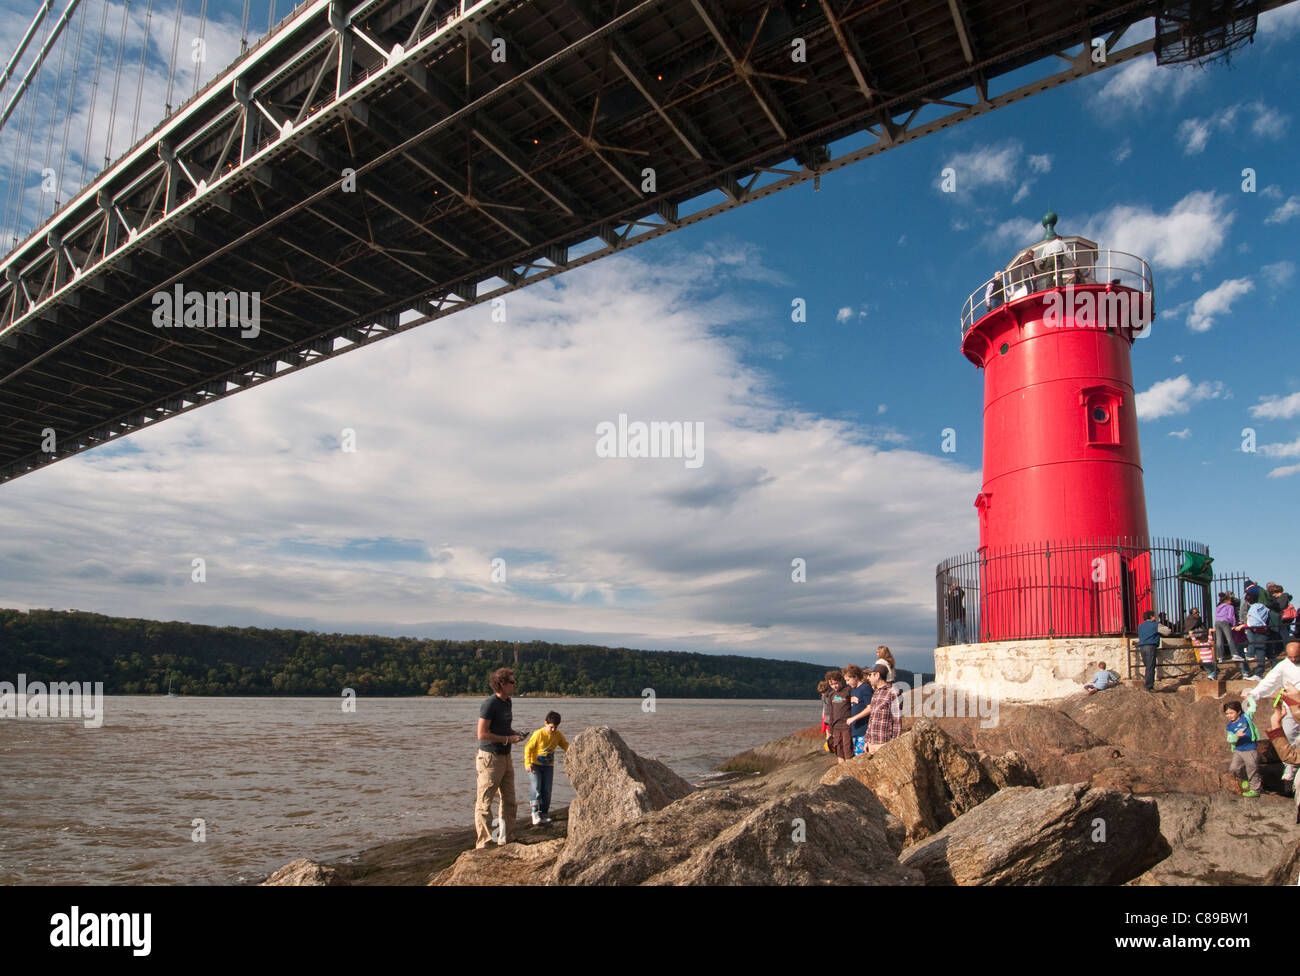 Le petit phare rouge, officiellement Jeffrey's Hook Lighthouse, à la base du pont George Washington à New York. Banque D'Images